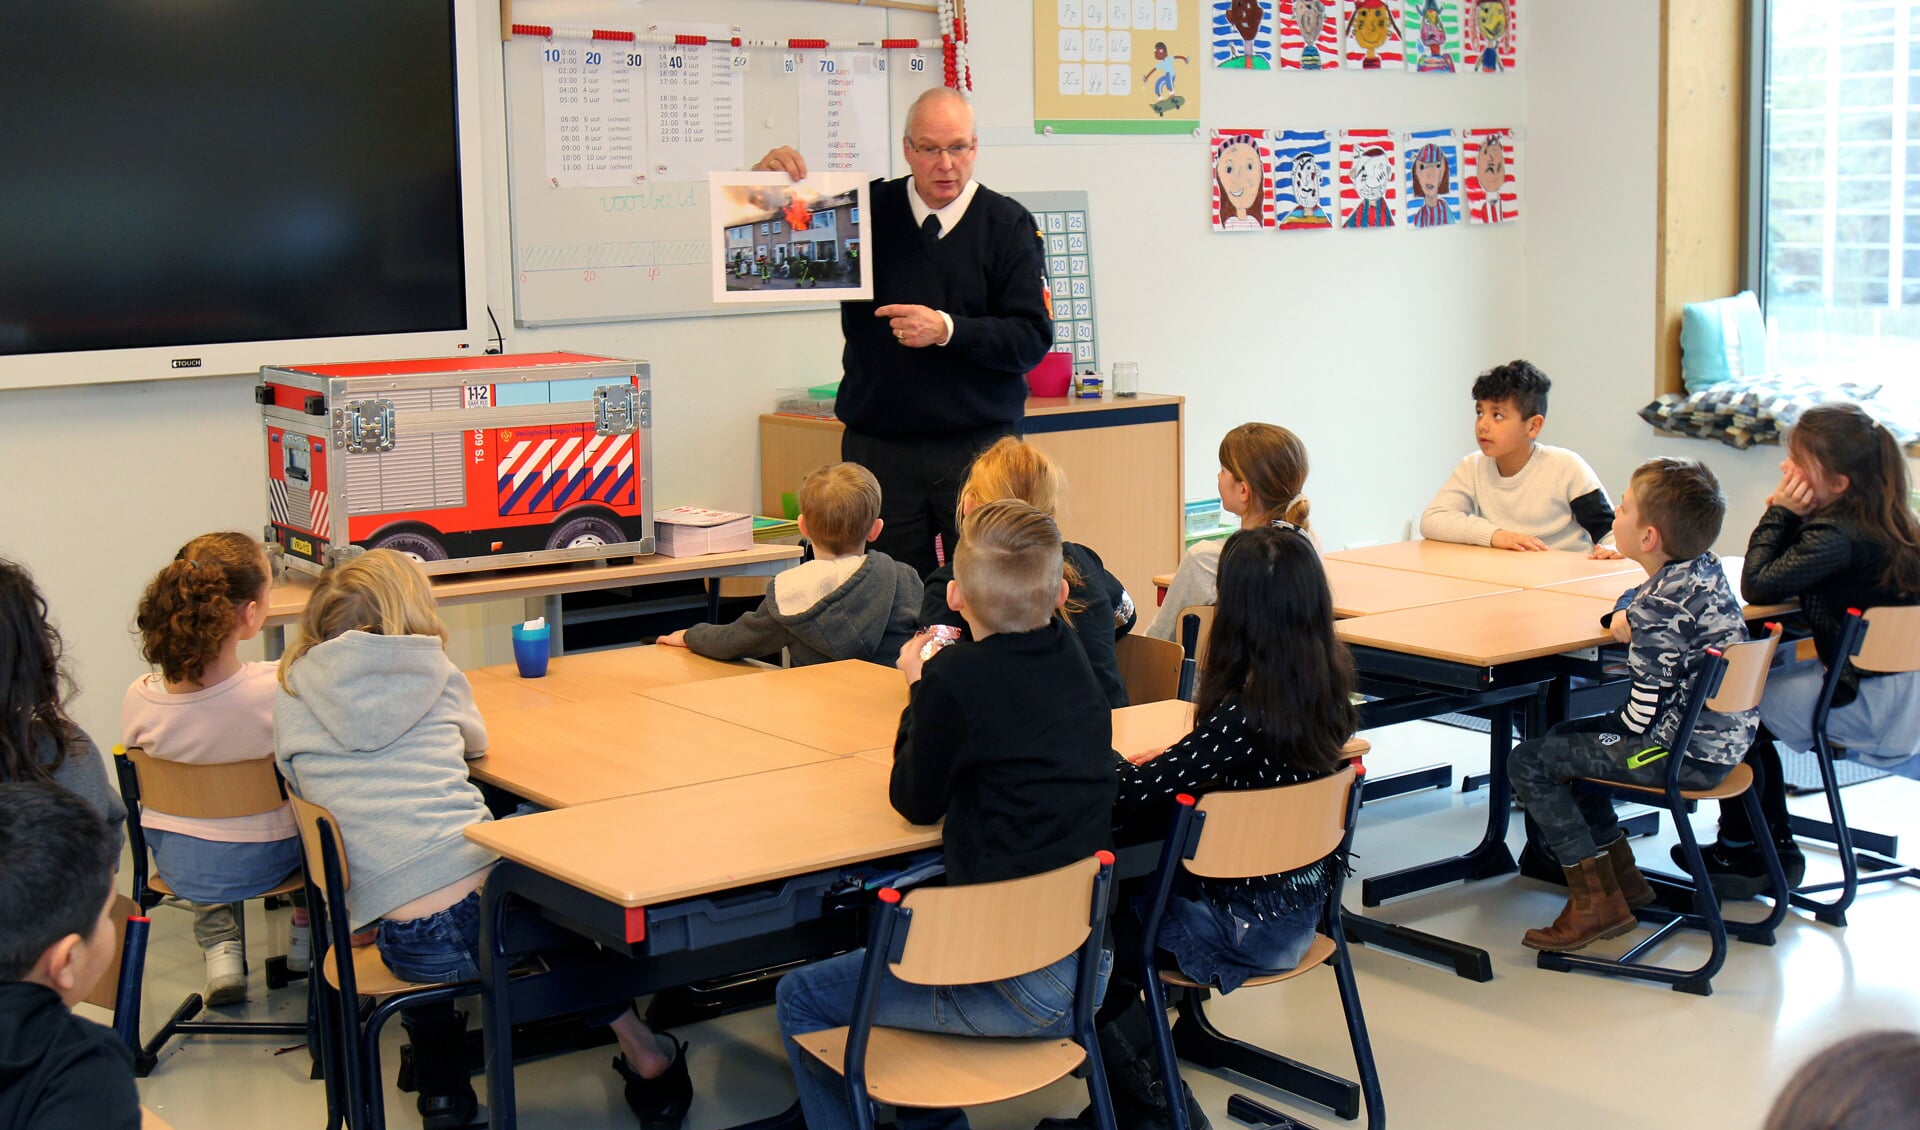  Kinderen van Wereldwijs luisteren aandachtig naar brandweerman Bram de Rijcke VRU) was donderdag op basisschool Wereldwijs.